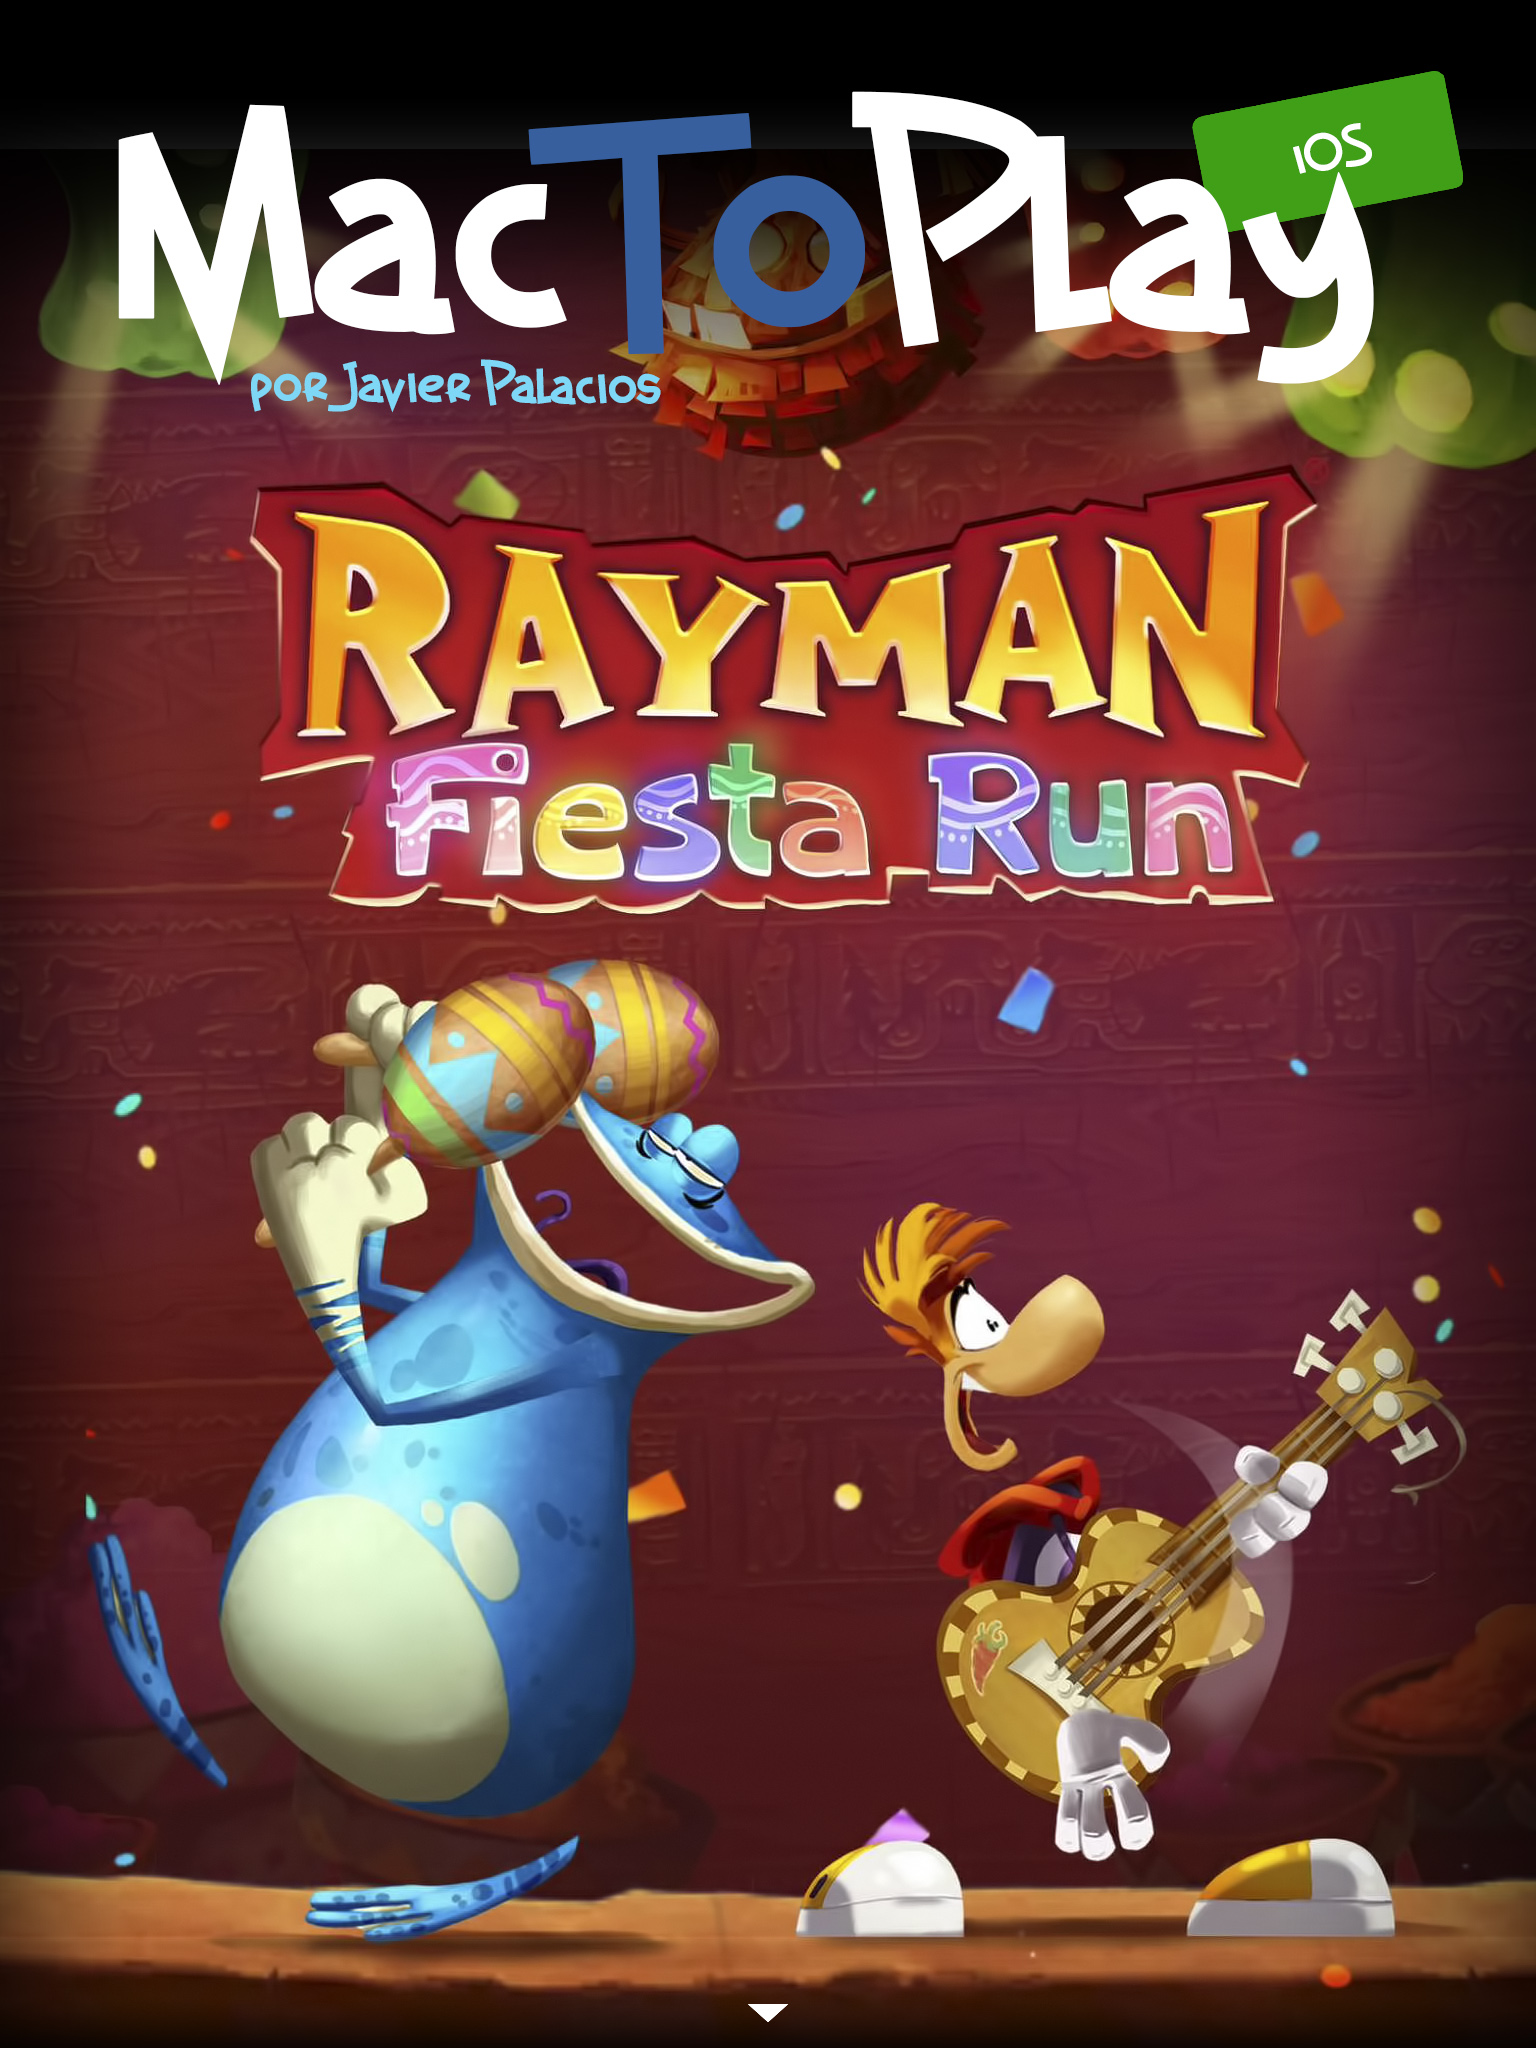 mactoplay ios: análisis sobre Rayman Fiesta Run. Continúa abajo el artículo